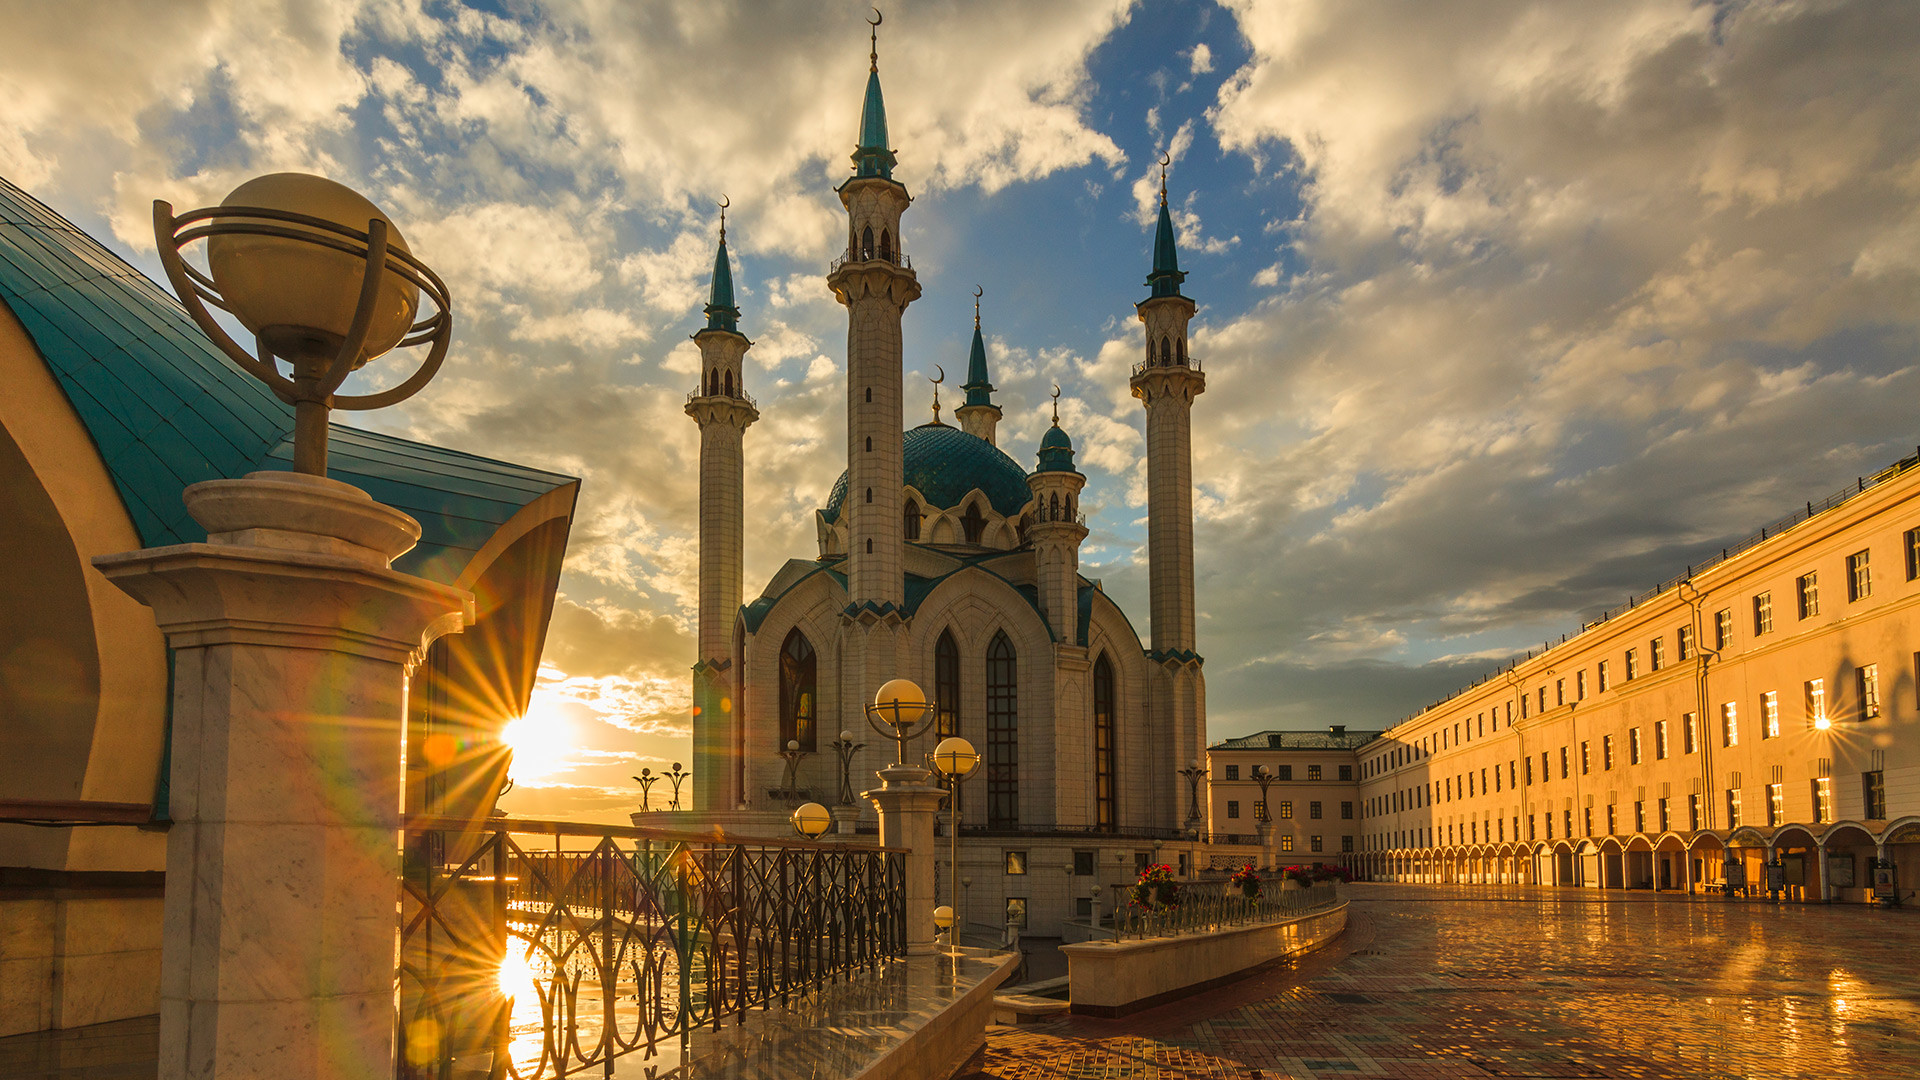 Мечеть Кул Шариф в Казанском Кремле. Одна из крупнейших мечетей в России. Объект Всемирного наследия ЮНЕСКО.